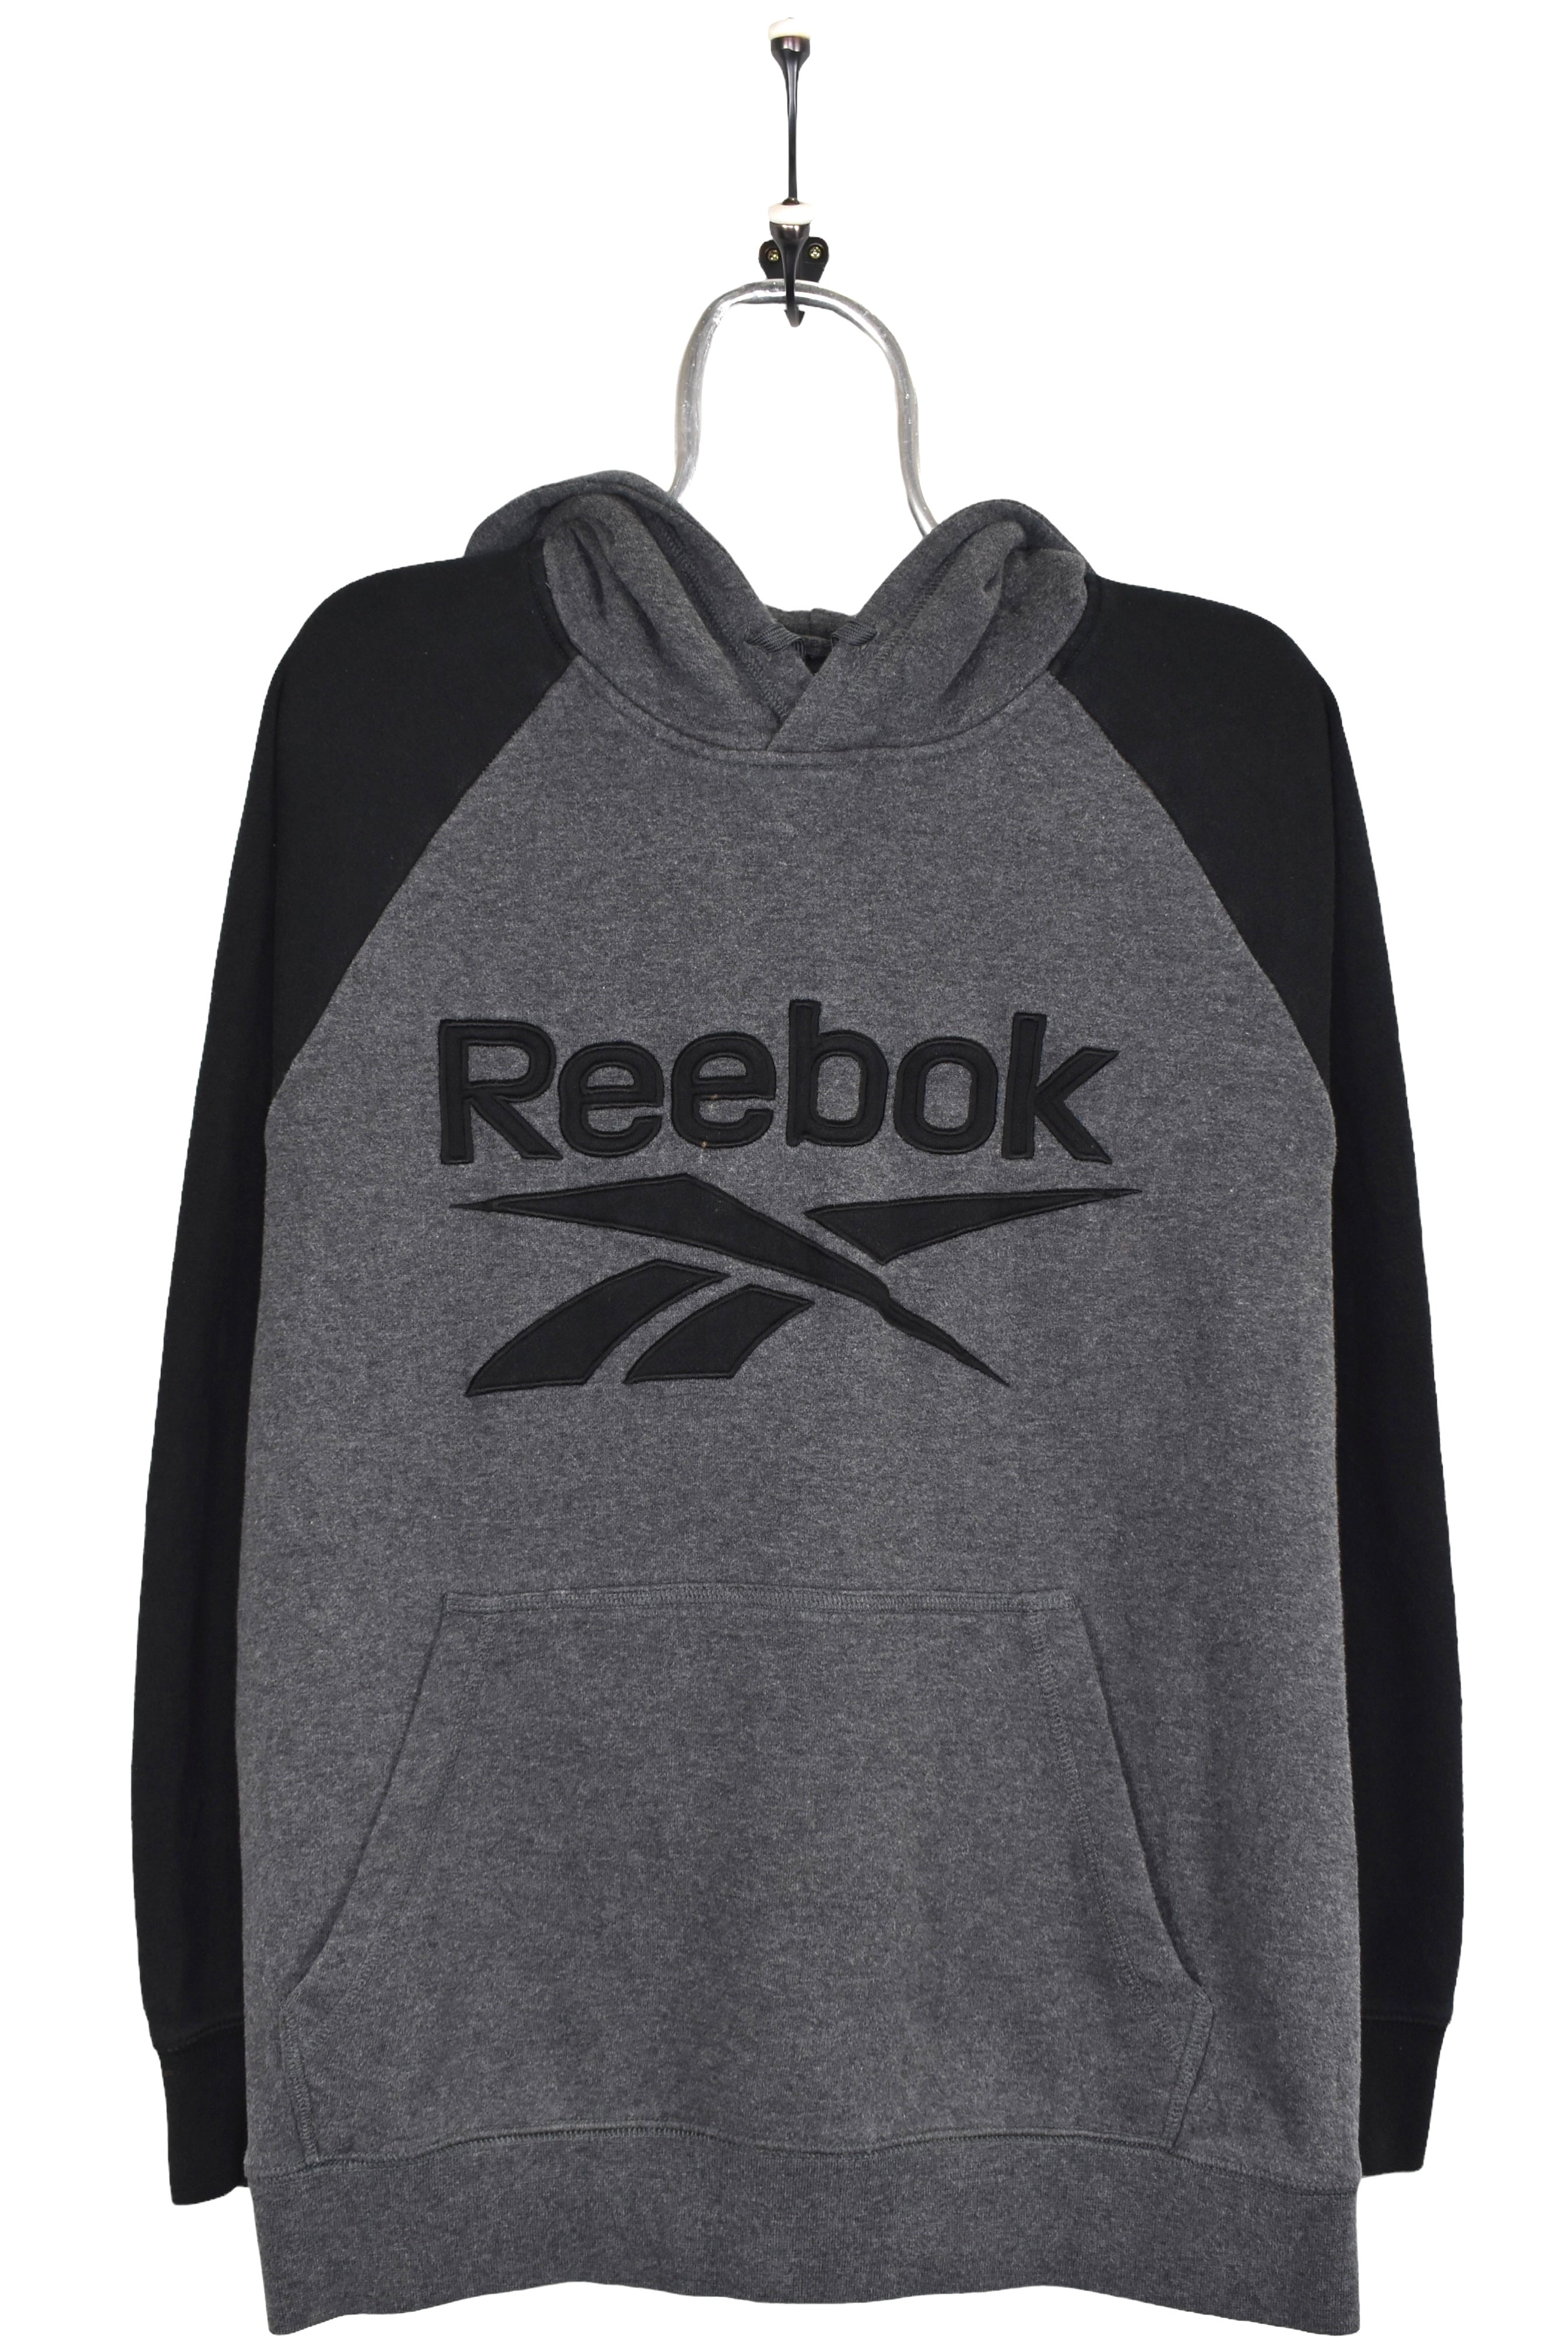 Vintage Reebok hoodie, grey embroidered sweatshirt - Large